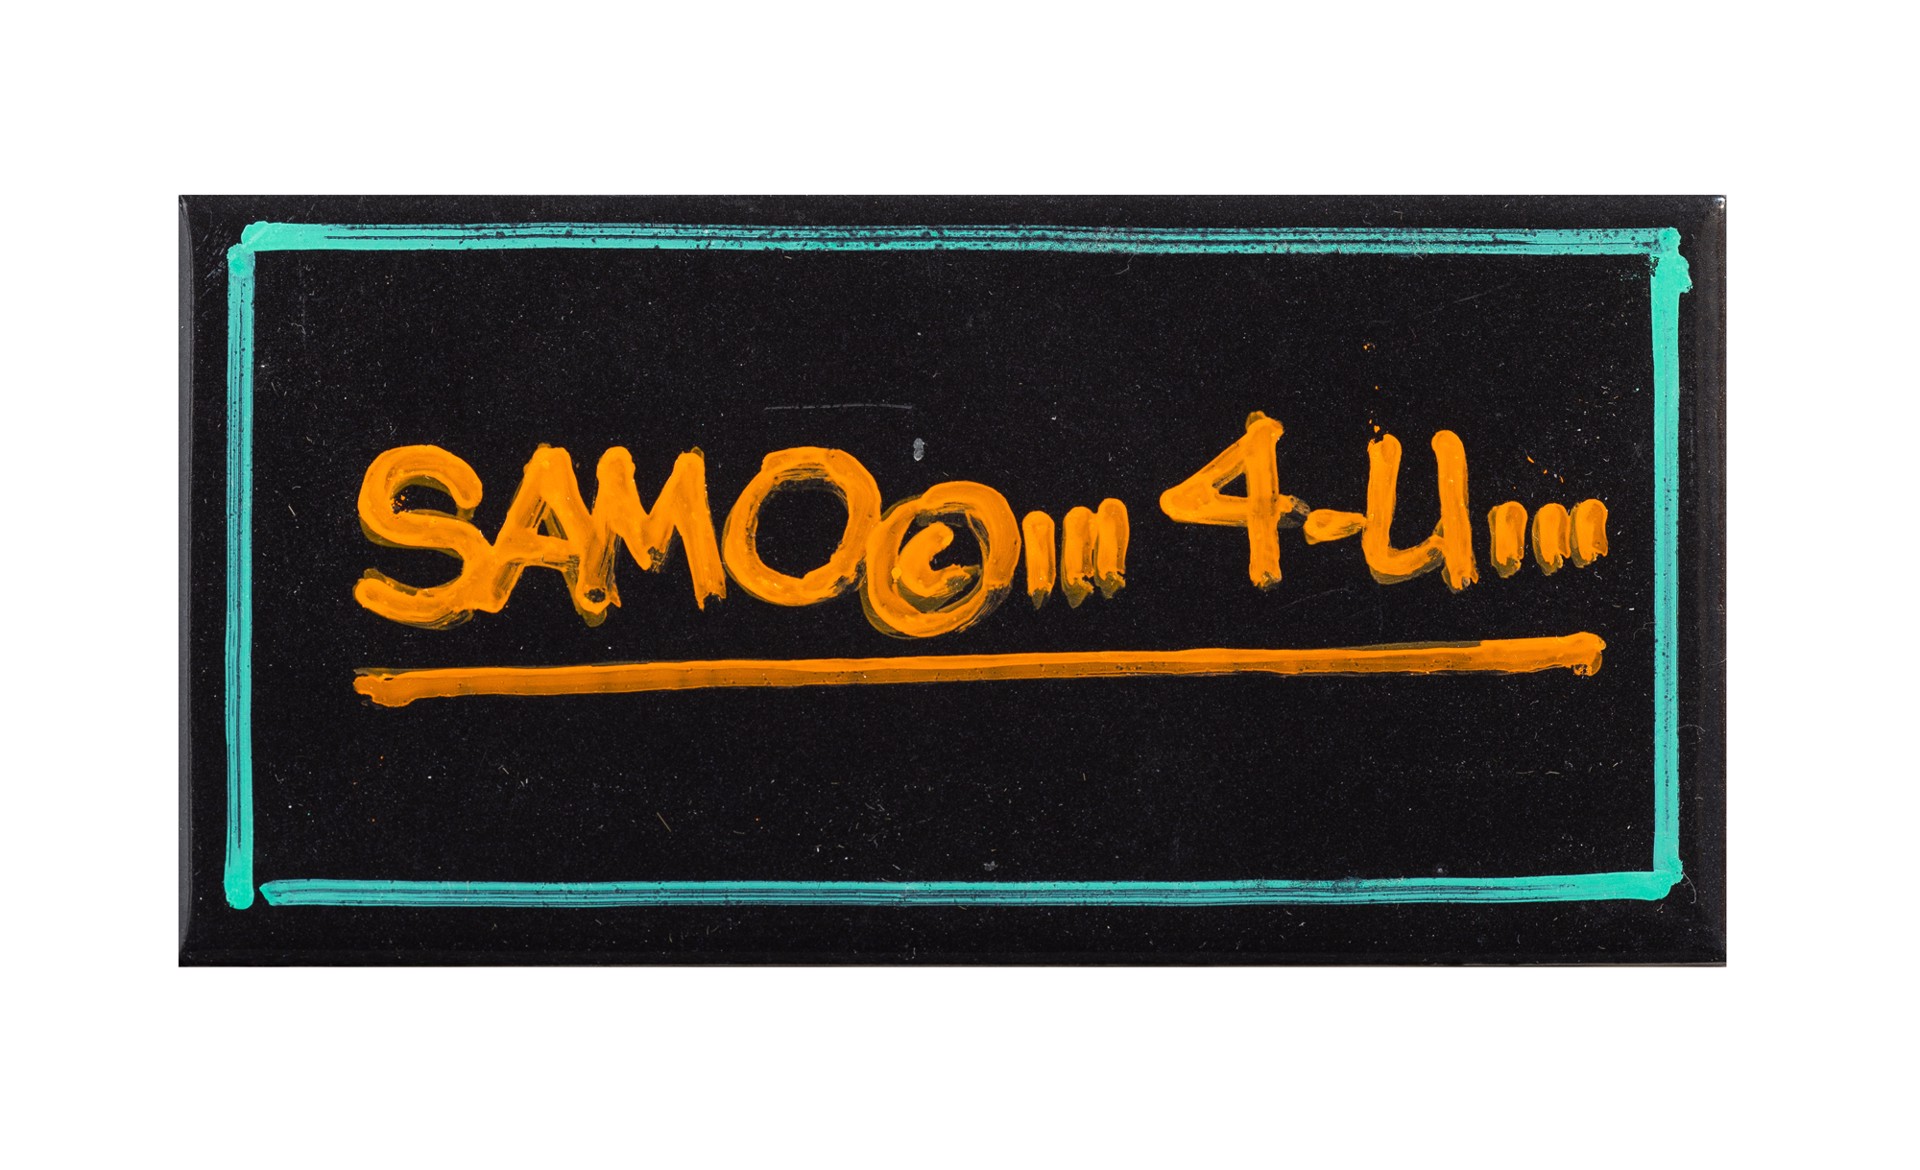 SAMO 4-U by Al Diaz